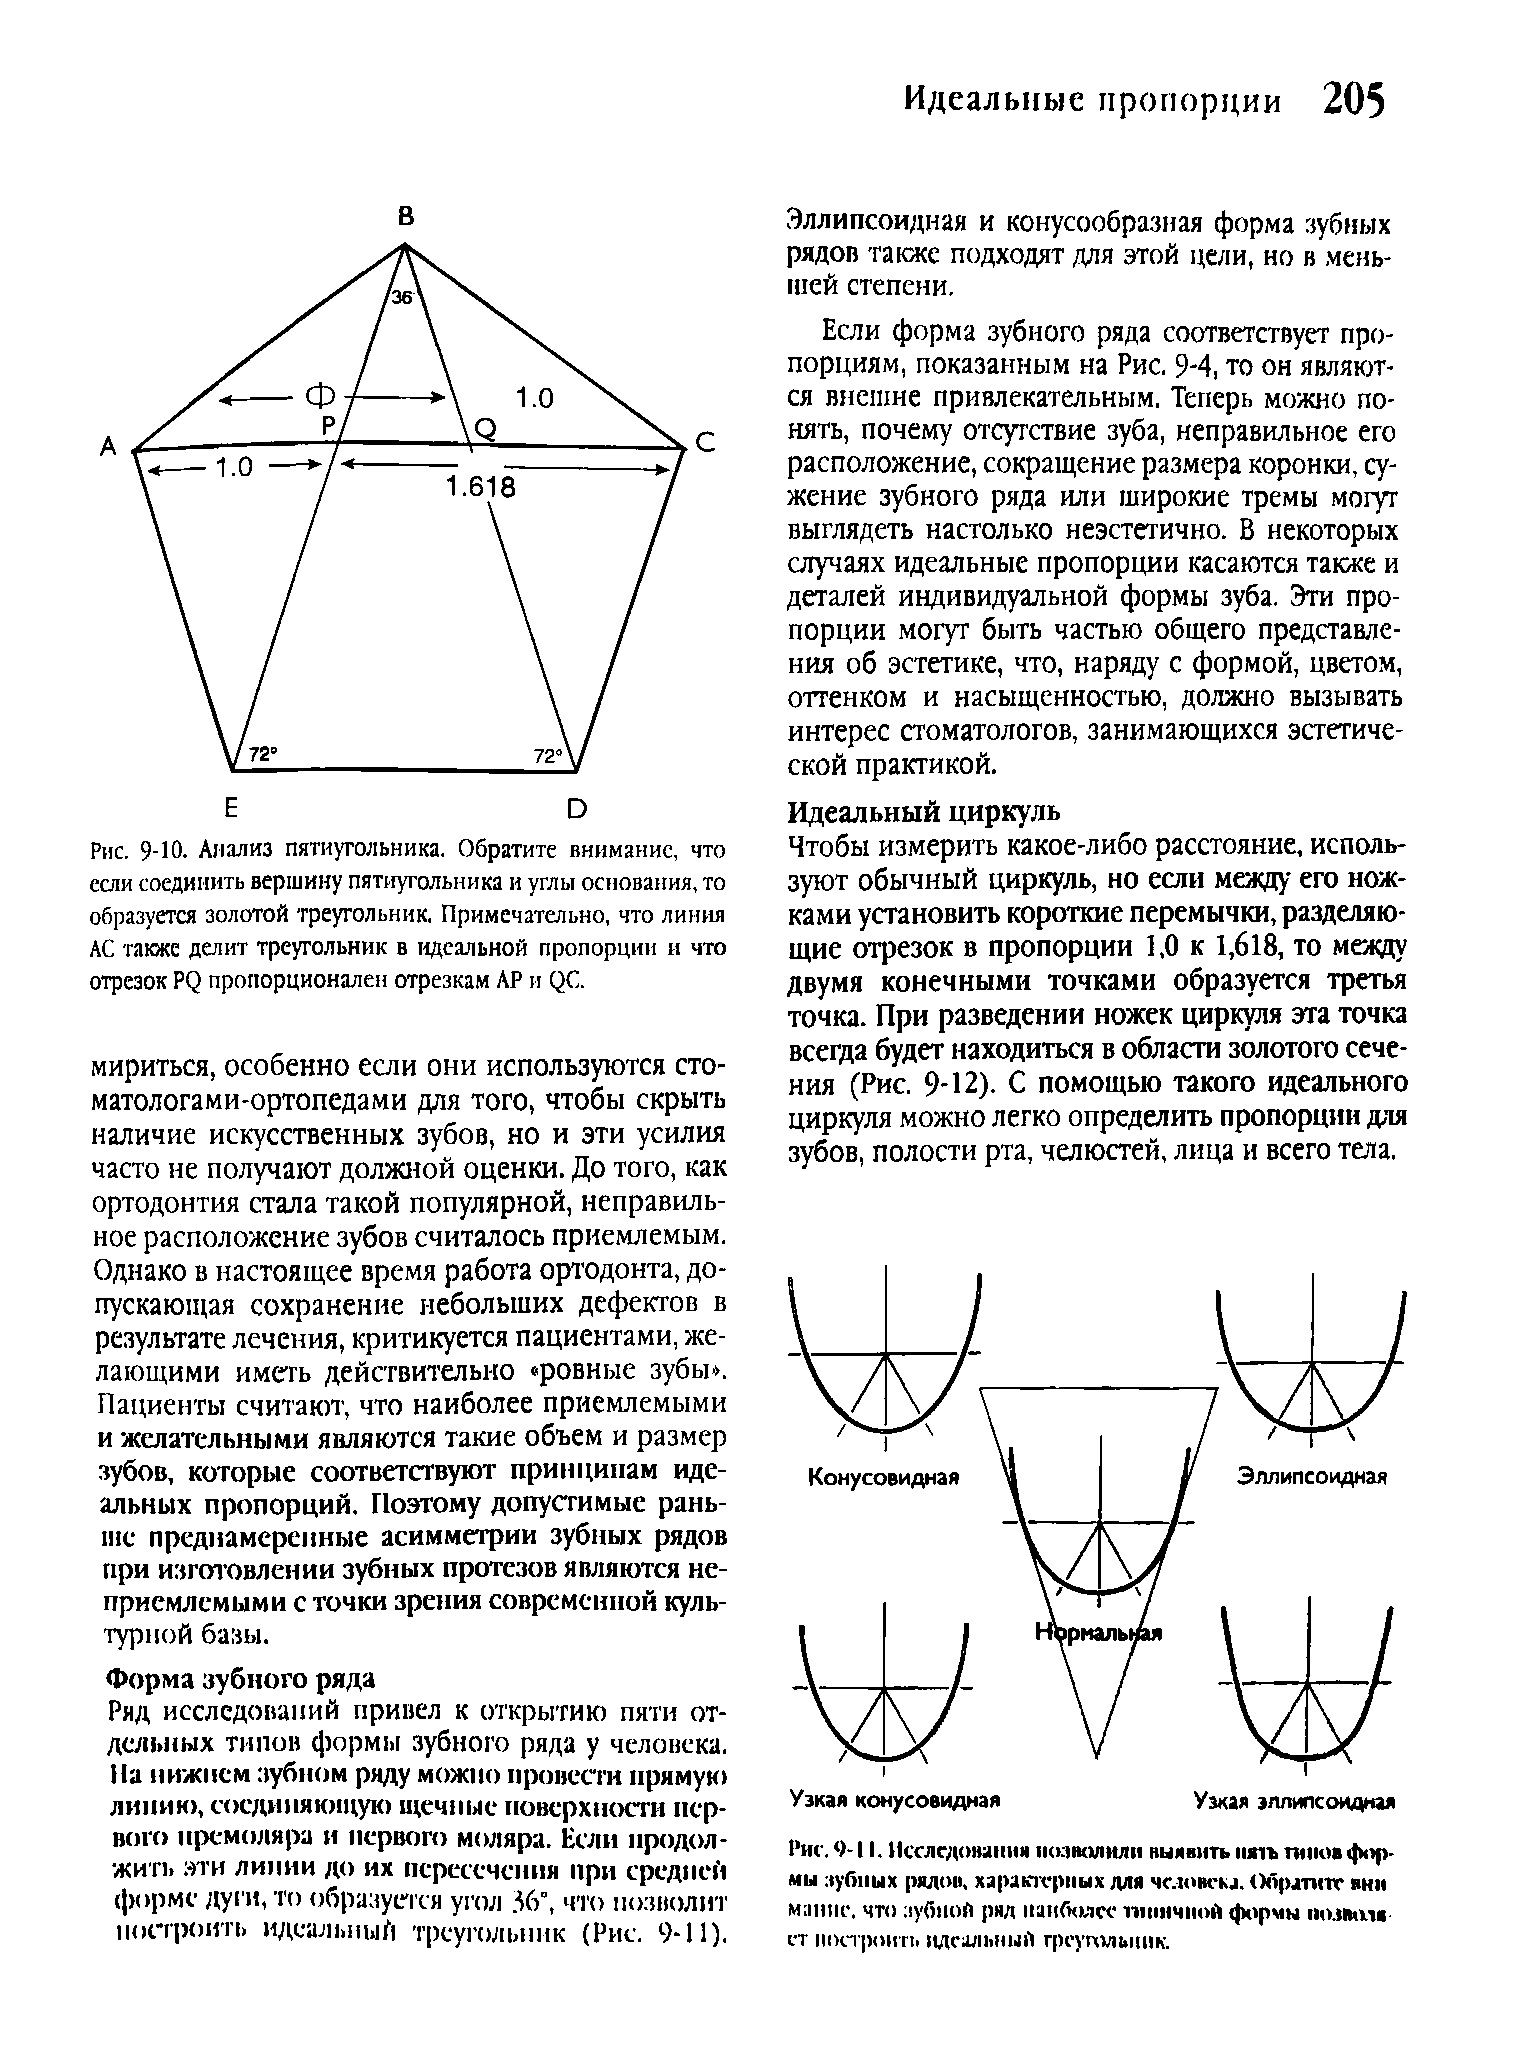 Рис. 9-Ю- Анализ пятиугольника. Обратите внимание, что если соединить вершину пятиугольника и углы основания, то образуется золотой треугольник. Примечательно, что линия АС также делит треугольник в идеальной пропорции и что отрезок Р( пропорционален отрезкам АР и ( С.